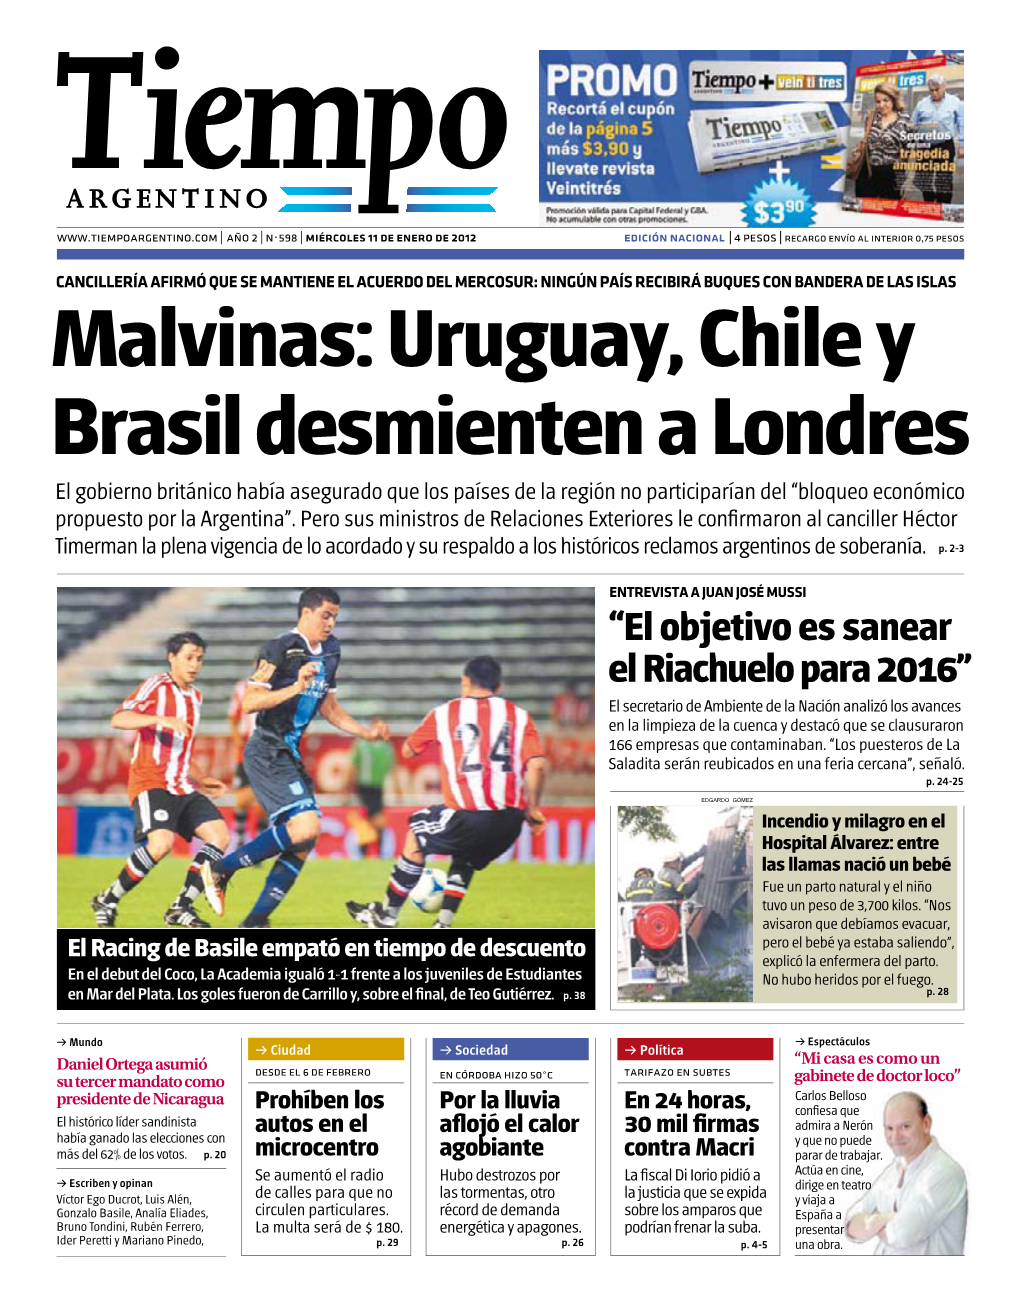 Malvinas: Uruguay, Chile Y Brasil Desmienten a Londres